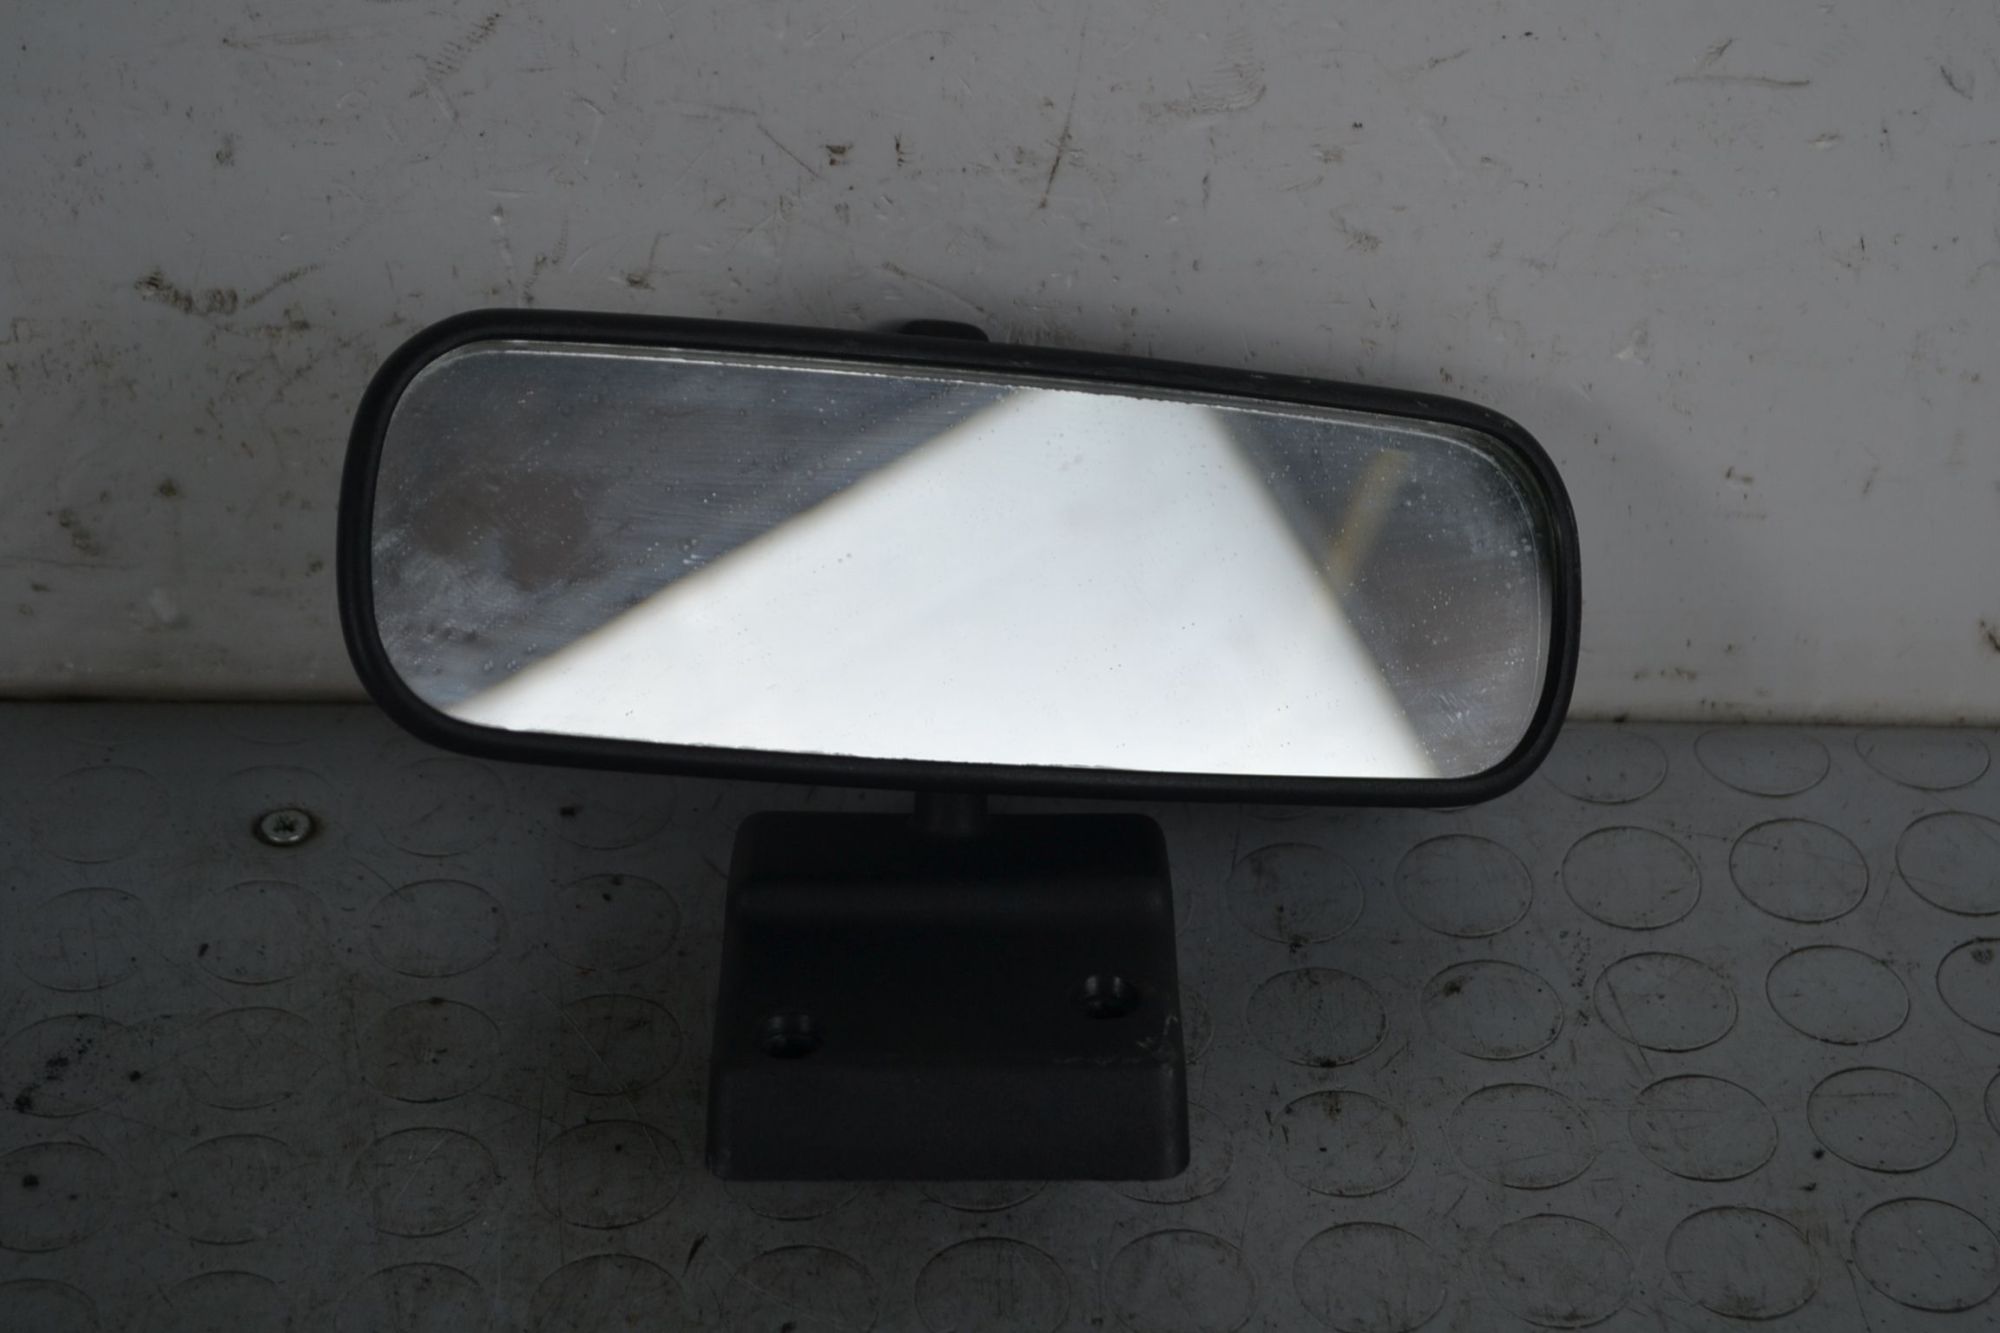 Specchietto retrovisore interno Fiat Uno Dal 1989 al 1995 Cod 0243647  1704712516581